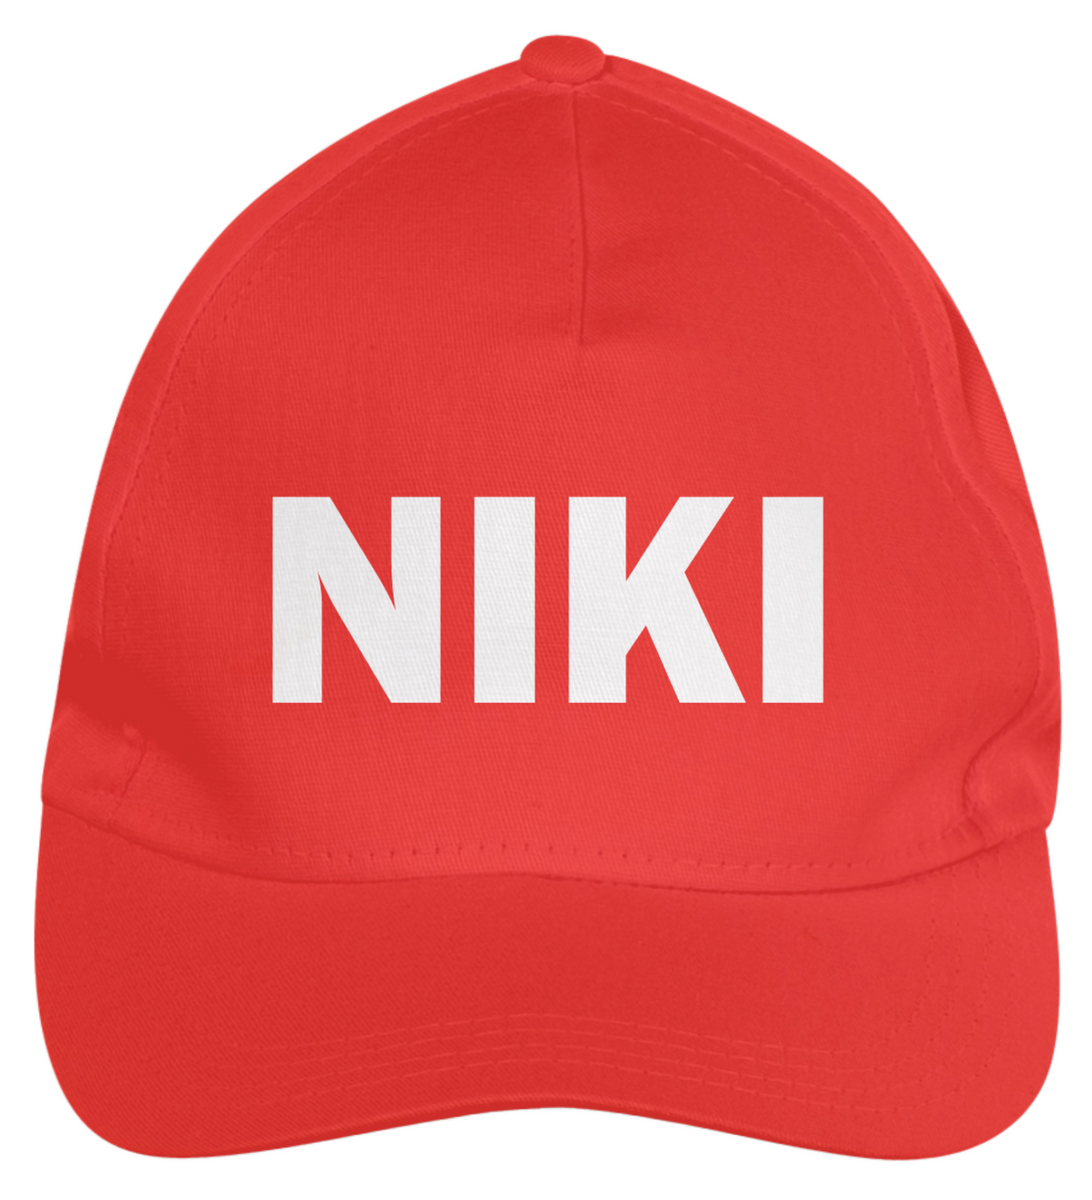 Nome do produto: Danke Niki